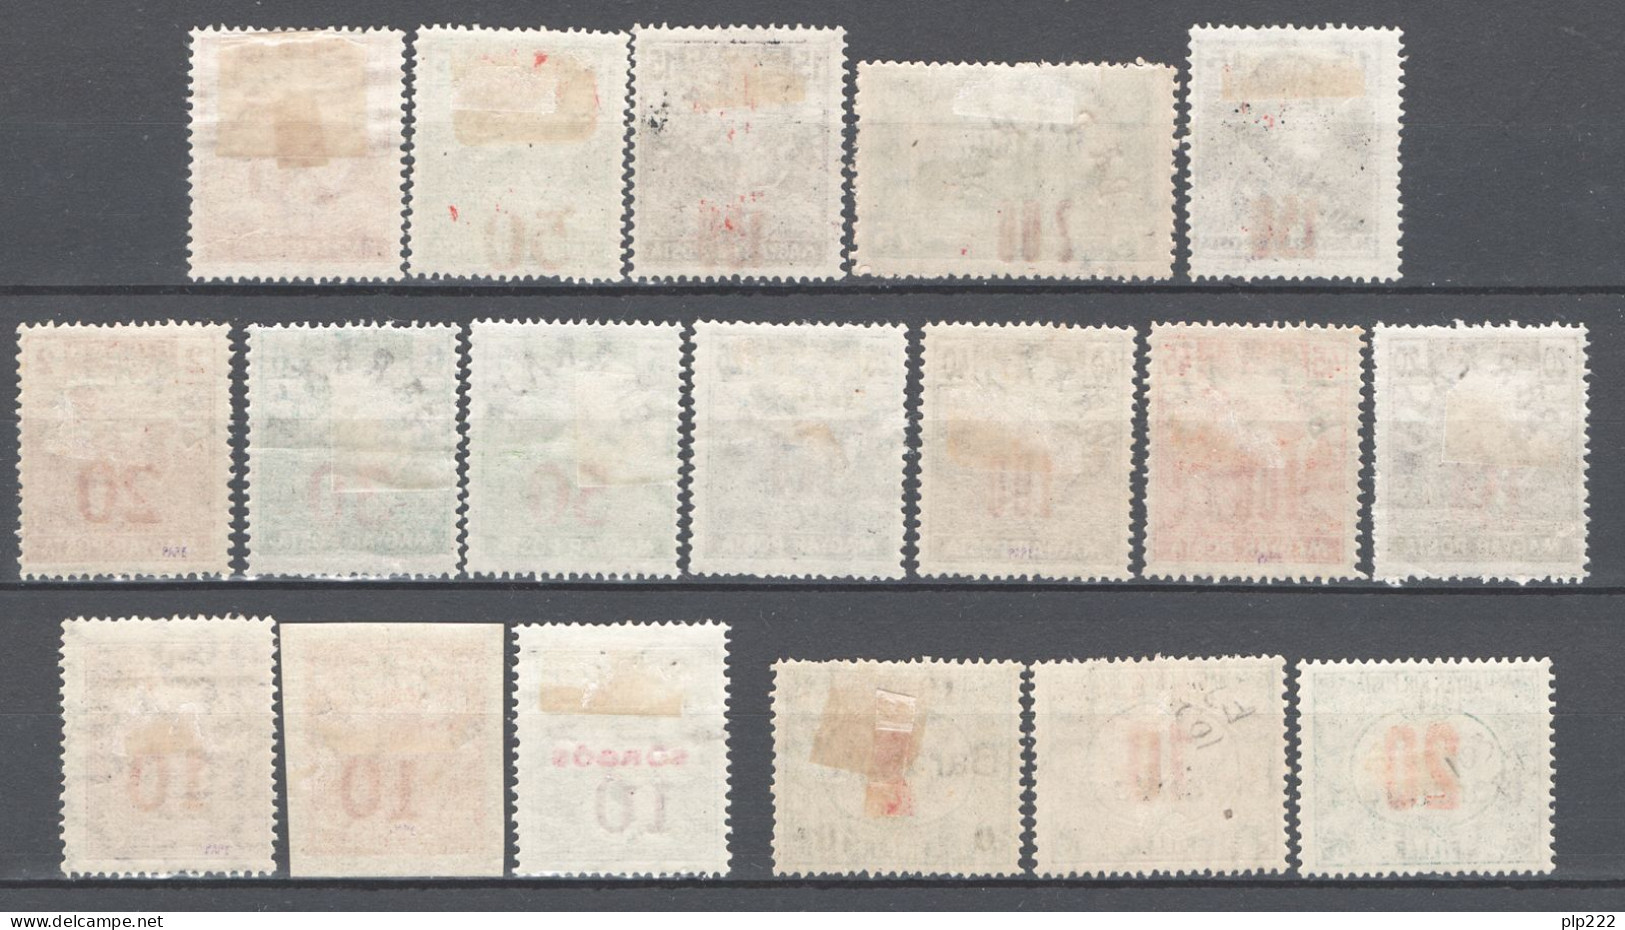 Ungheria Baranya 1919 Collezione Avanzata / Advanced Collection 61 Val. */MH VF/F - Local Post Stamps